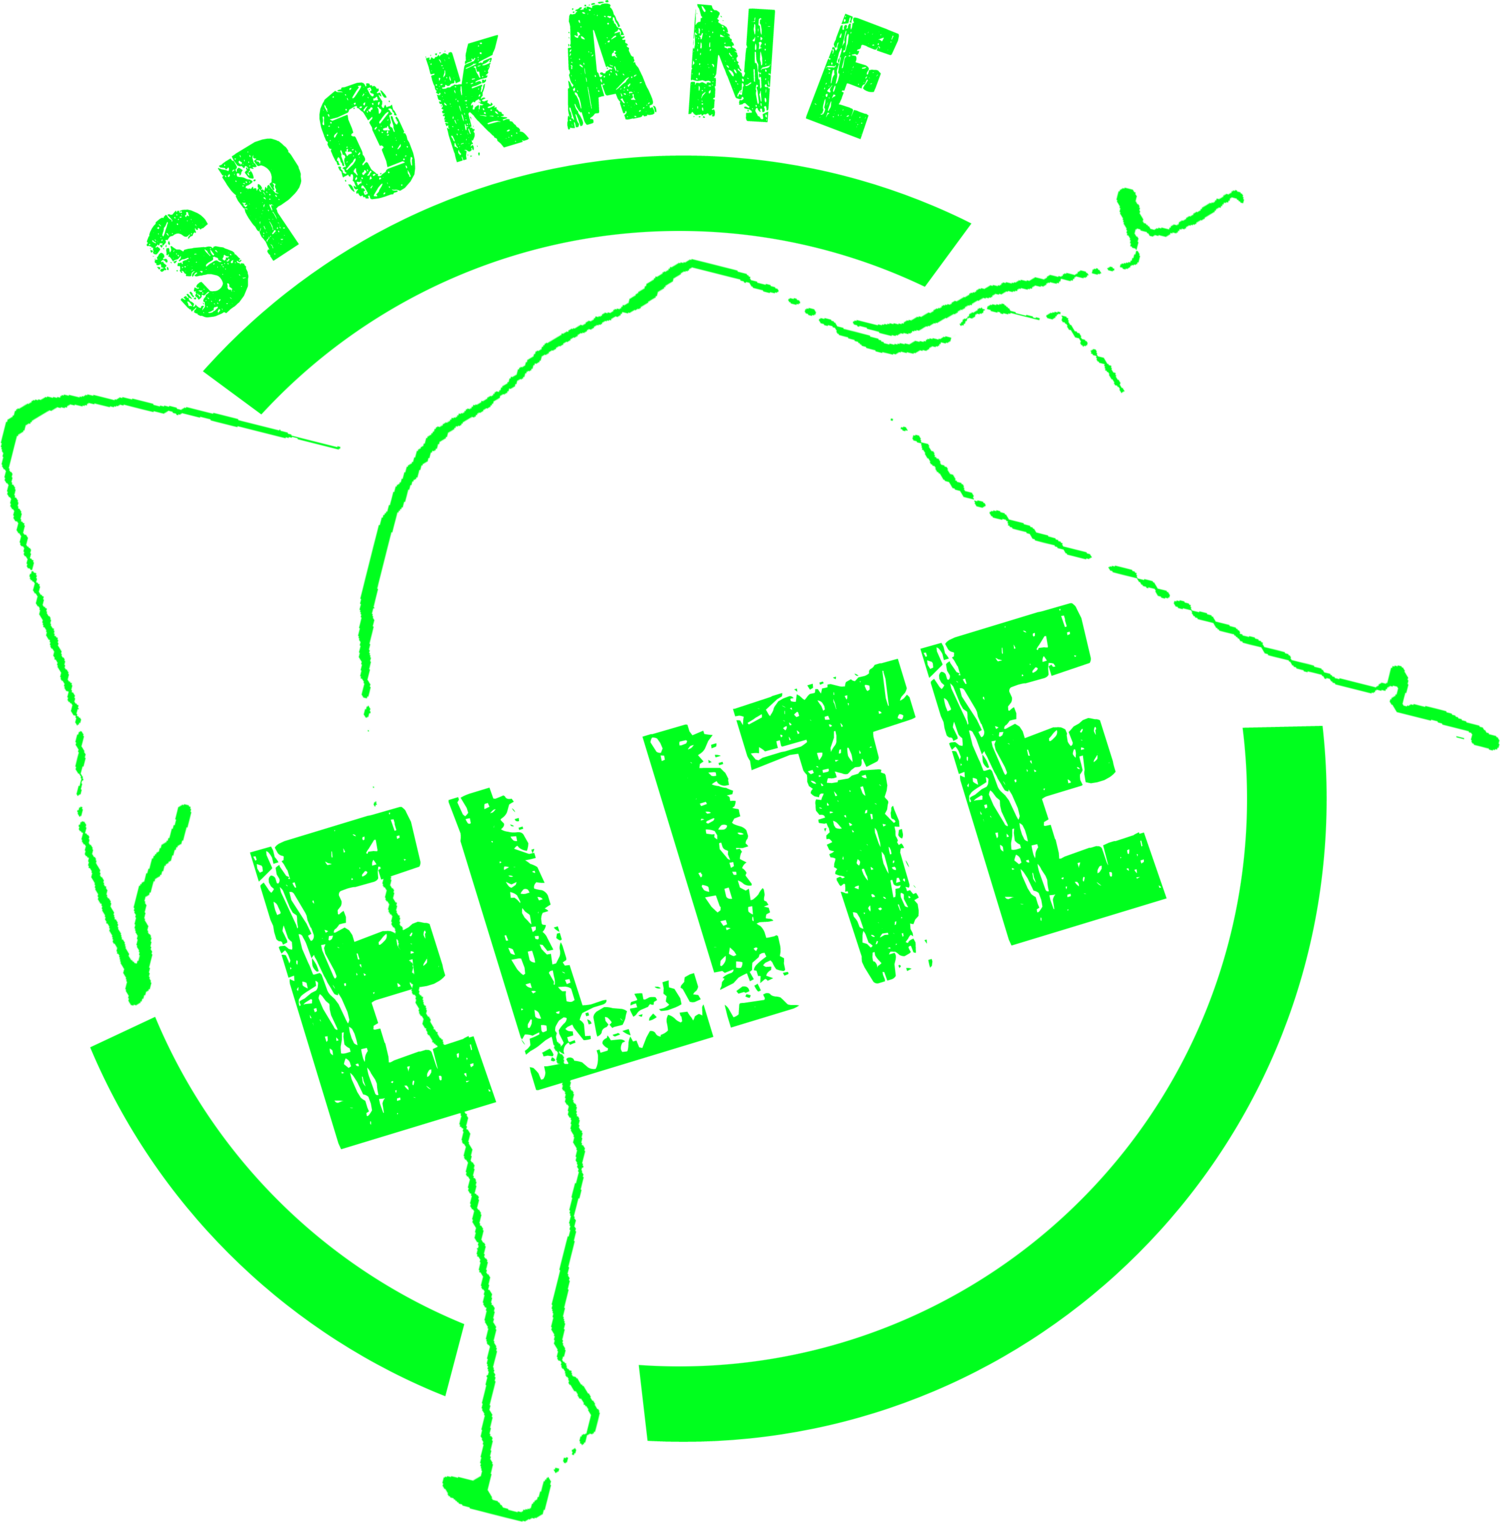 Class Schedule Clip Art - Spokane Elite Dance Studio - Png Download (1500x1523), Png Download